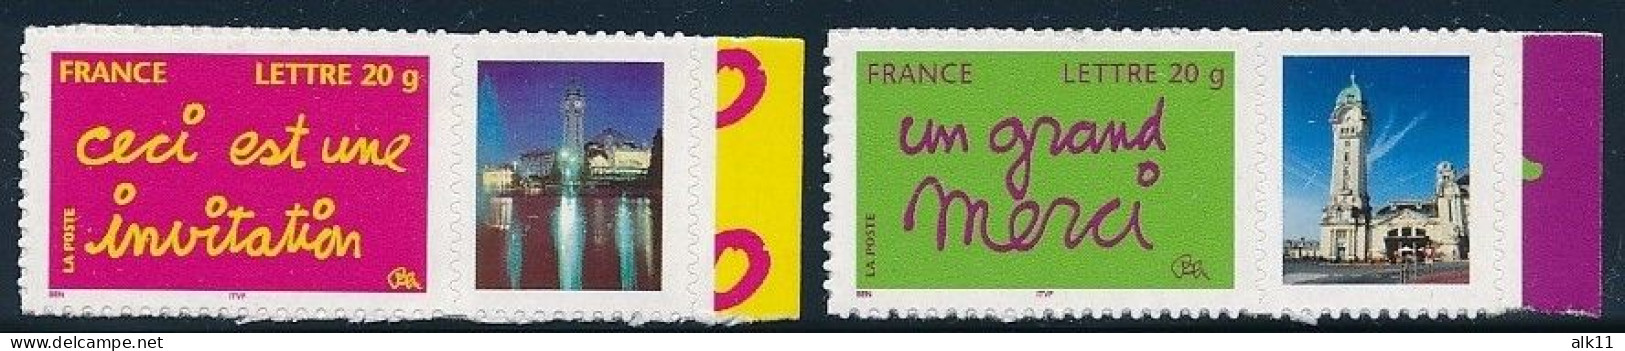 France 2005 - 3760B Et 3761B Deux Timbres Adhésifs Personnalisés Invitation Et Merci Avec Logo Privé - Neuf - Unused Stamps